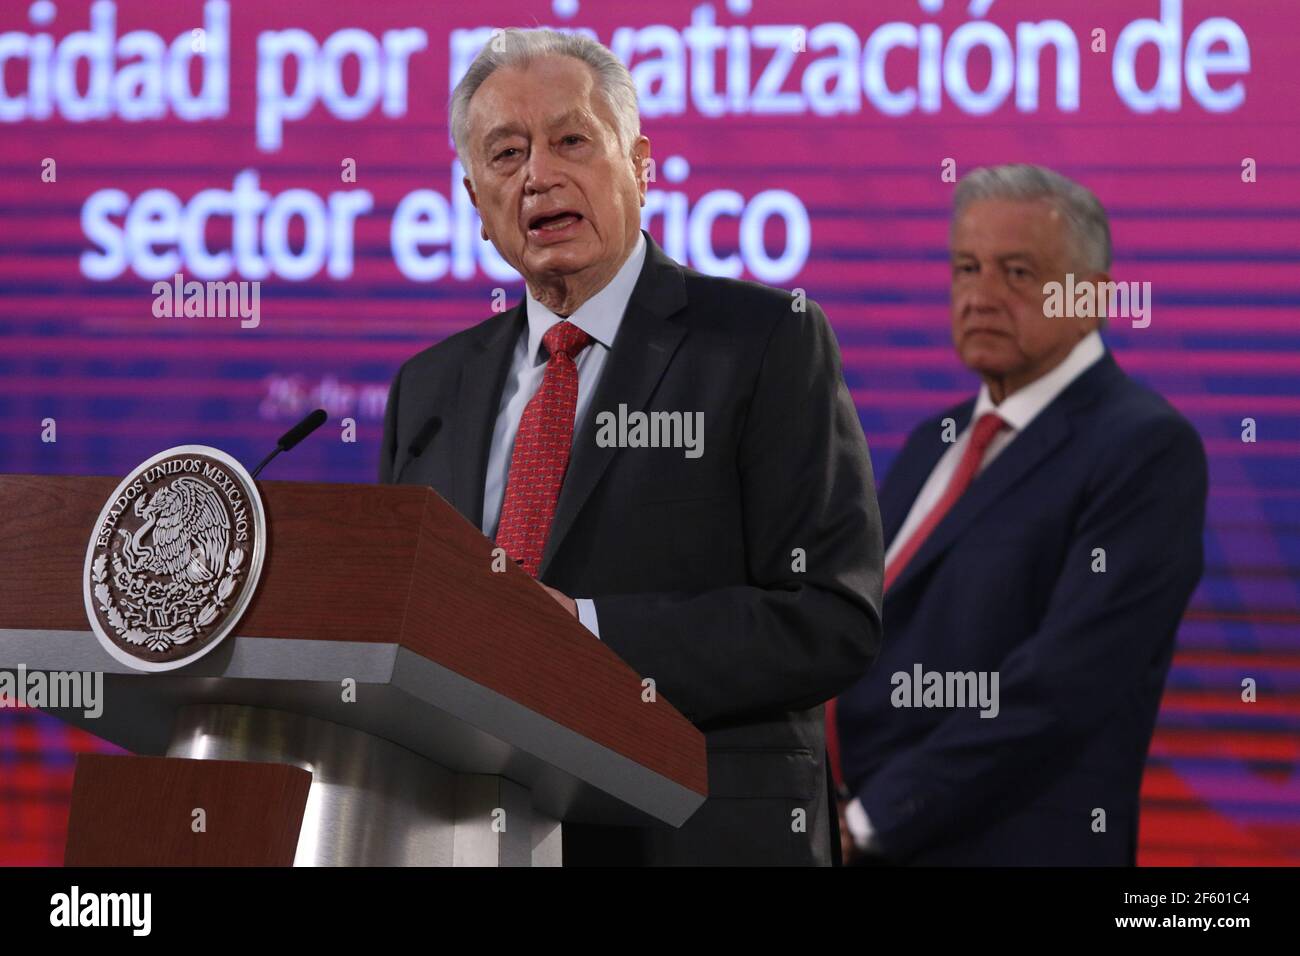 Nicht exklusiv: MEXIKO-STADT, MEXIKO - MÄRZ 26: Mexikos Präsident Andres Manuel Lopez Obrador und Direktor der Eidgenössischen Elektrizitätskommission (CFE) Stockfoto